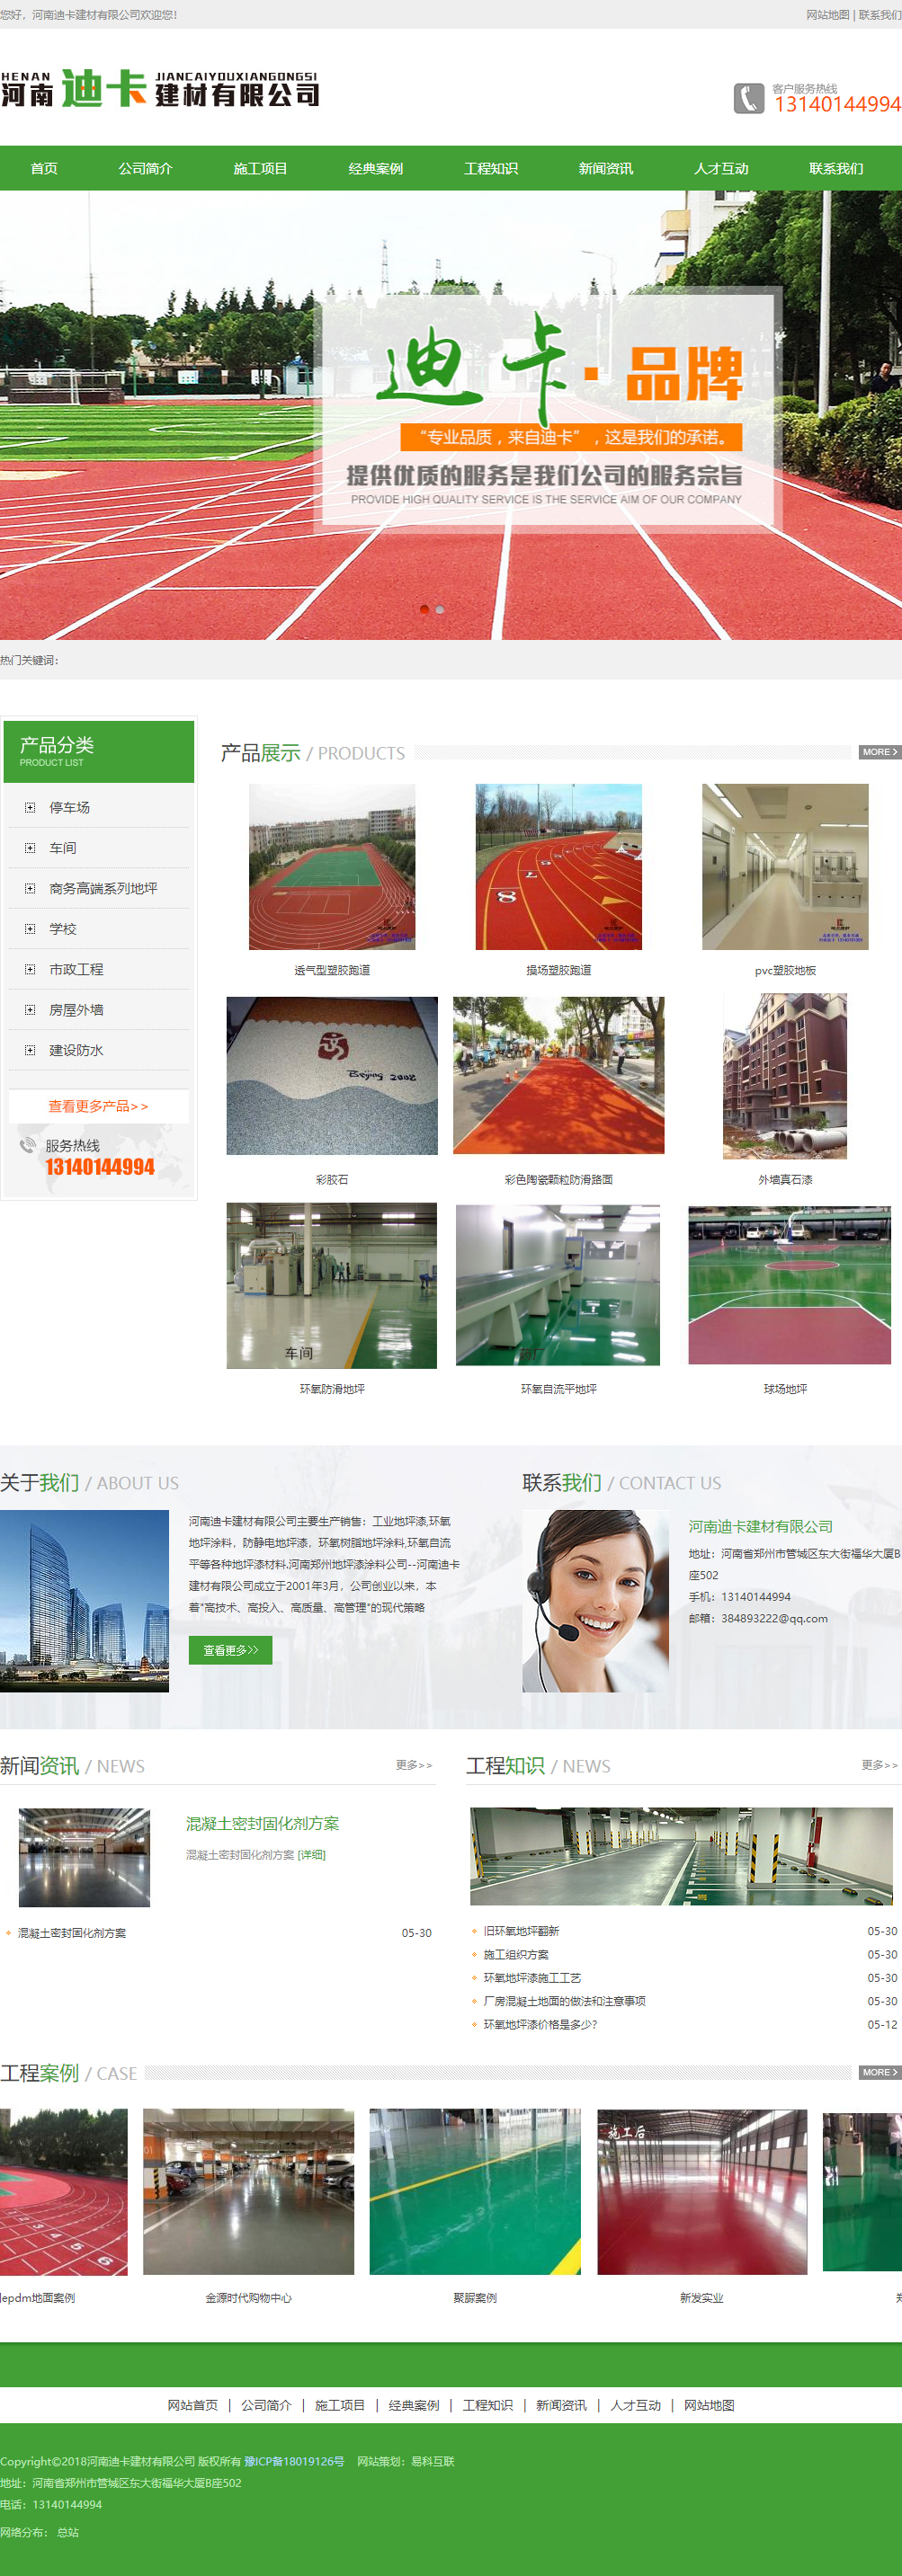 河南迪卡建材有限公司网站案例